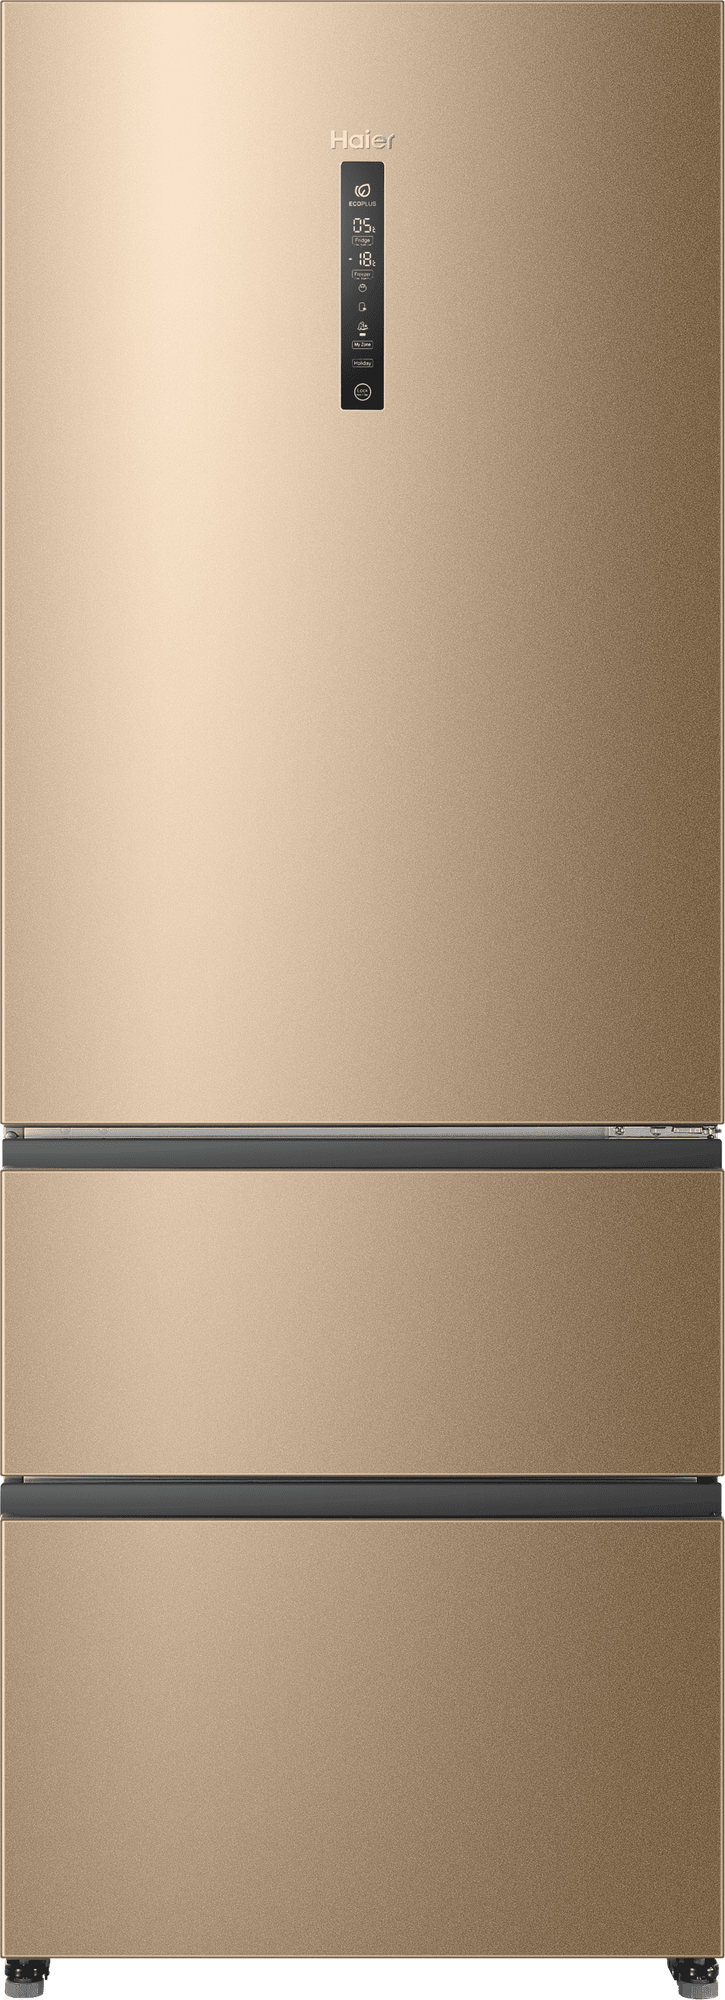 Холодильник Haier A4F742CGG